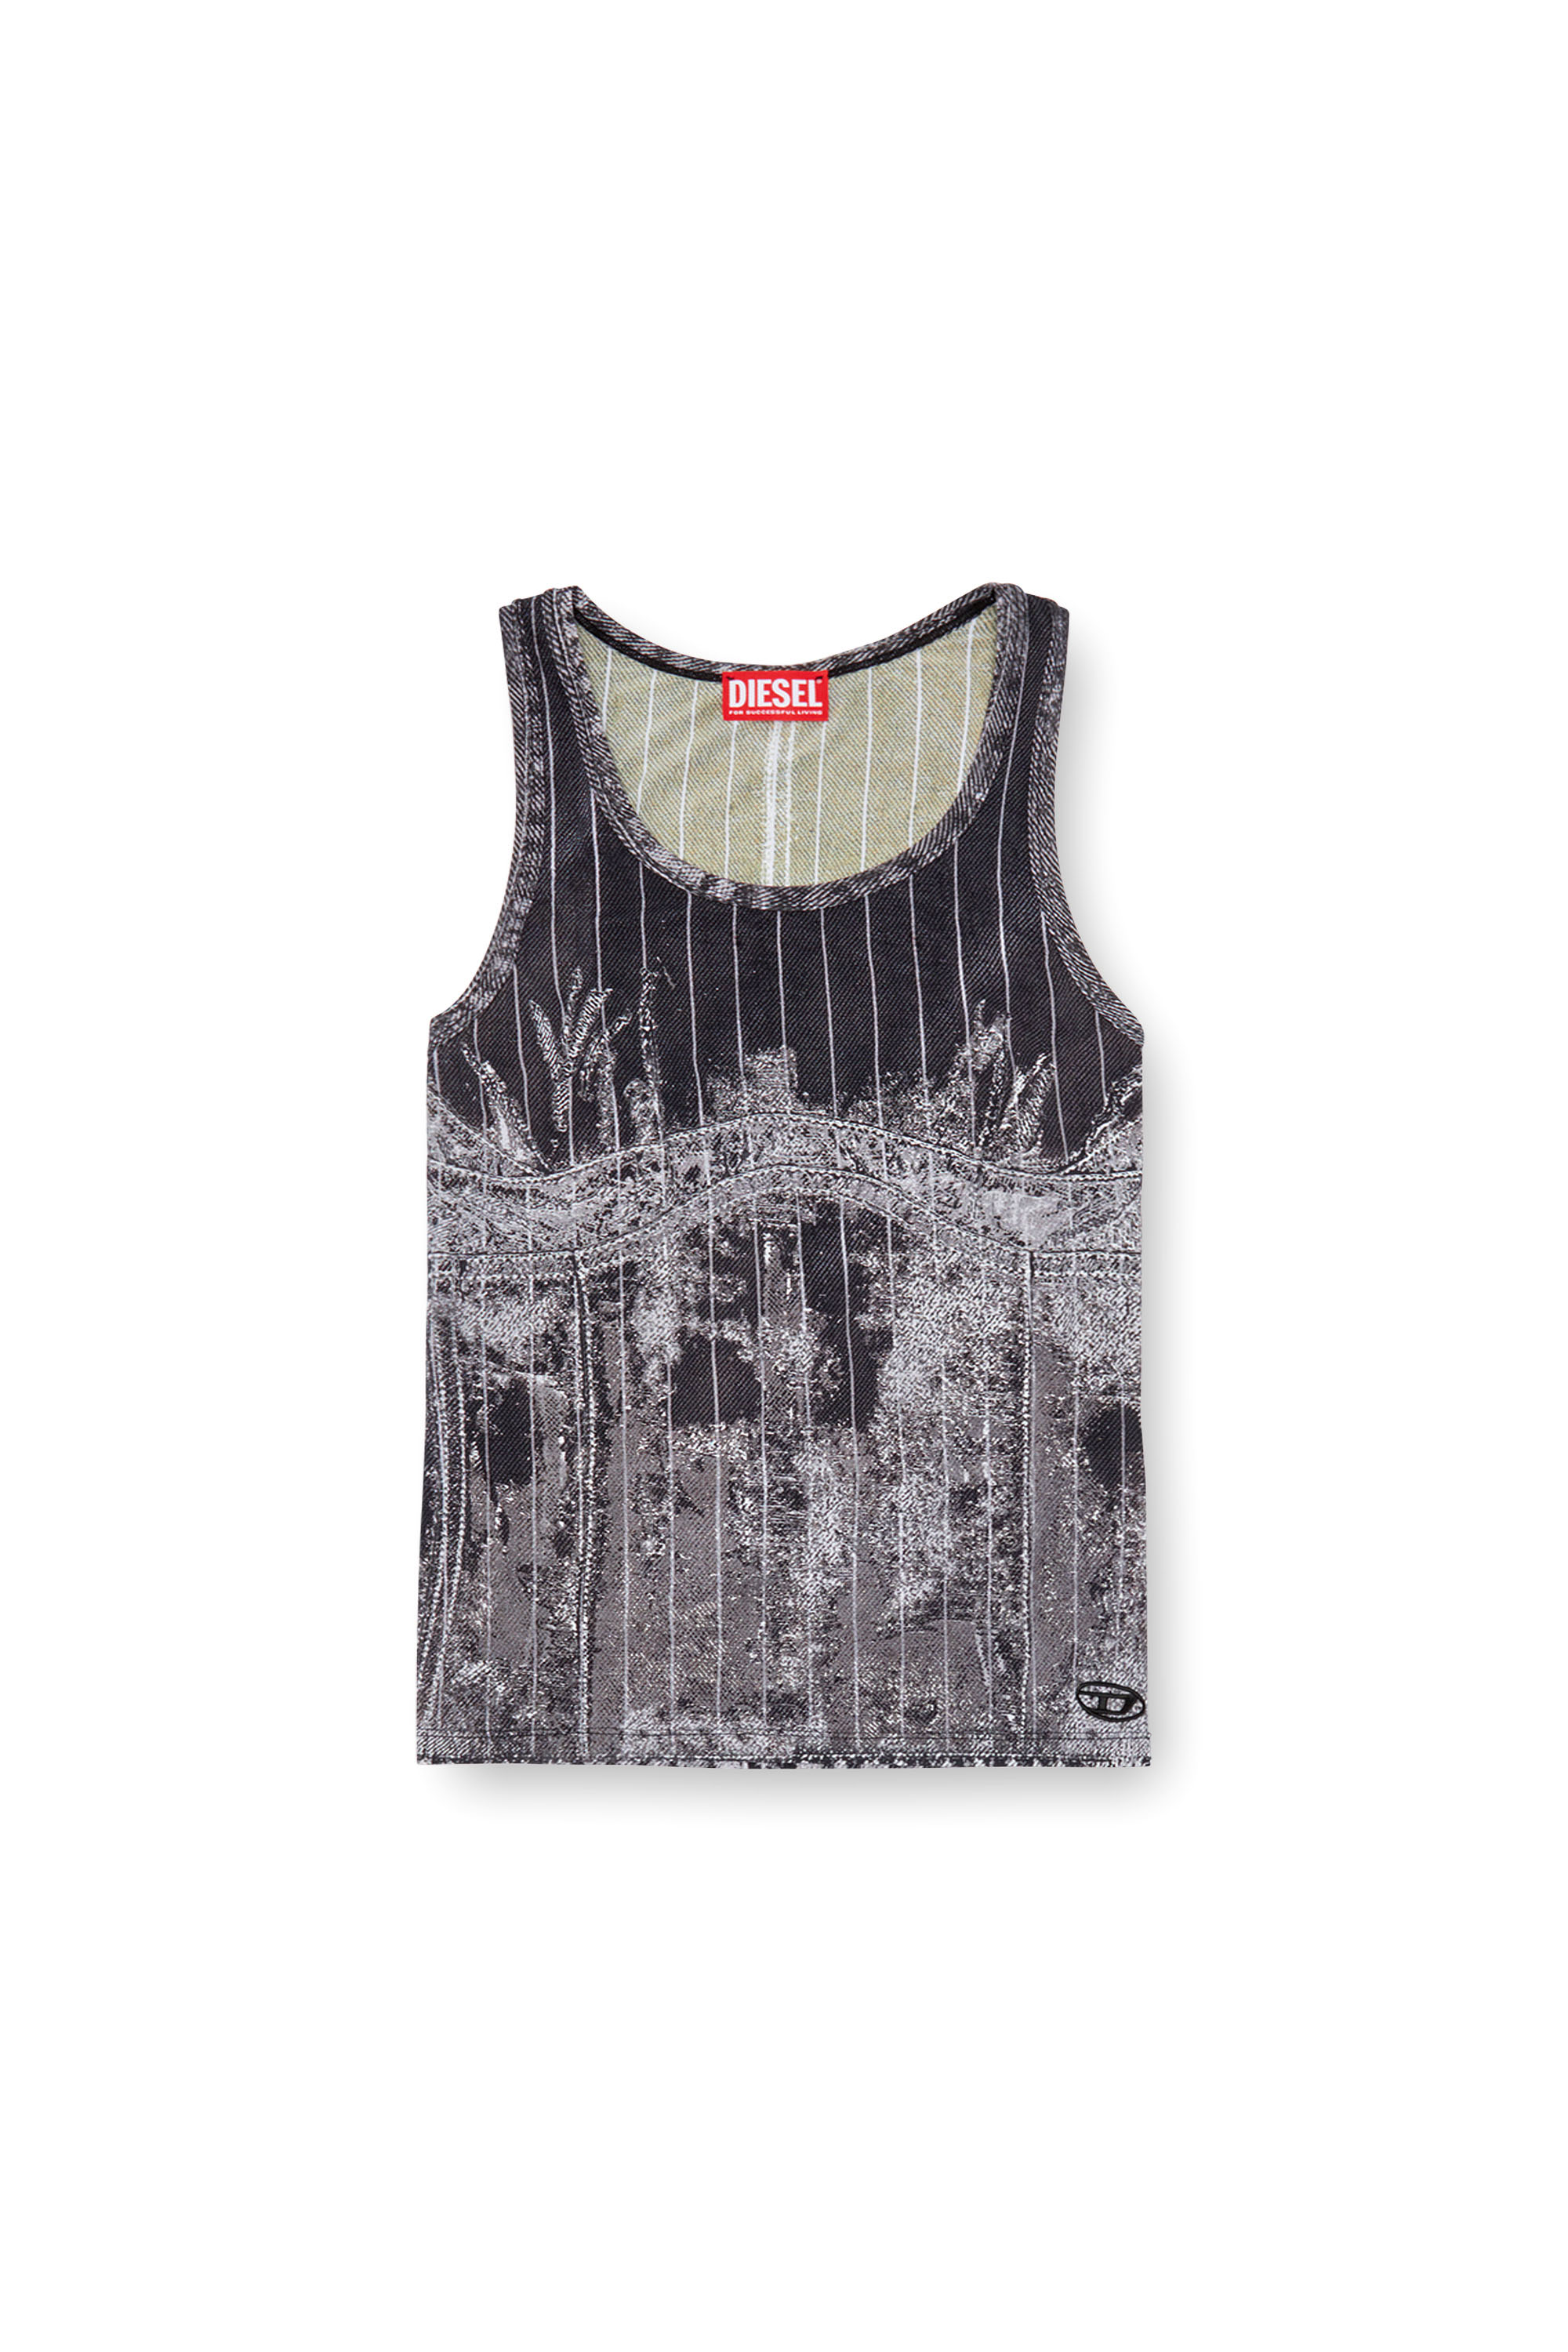 Diesel - T-STRIPE, Mujer Camiseta sin mangas con estampado de denim a rayas finas in Negro - Image 3